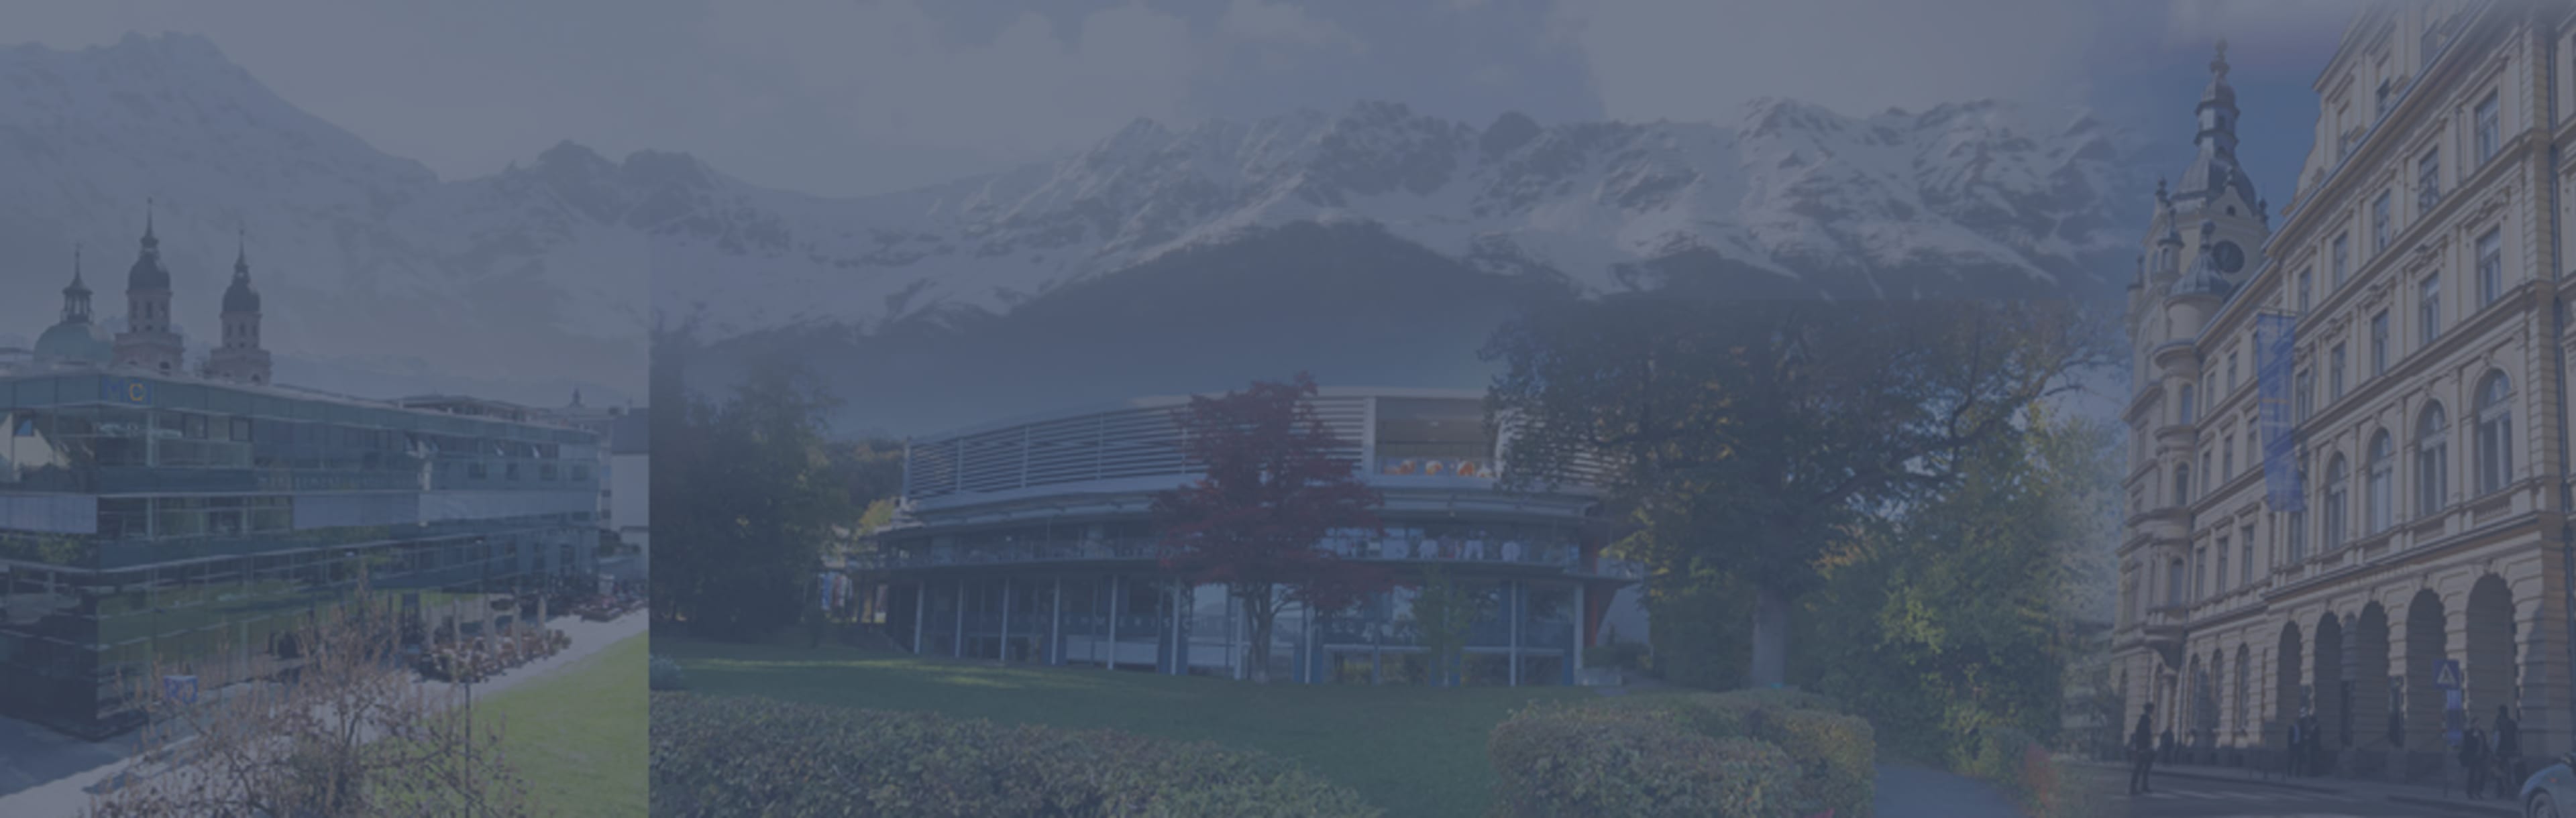 Management Center Innsbruck Executive PhD Program in Management